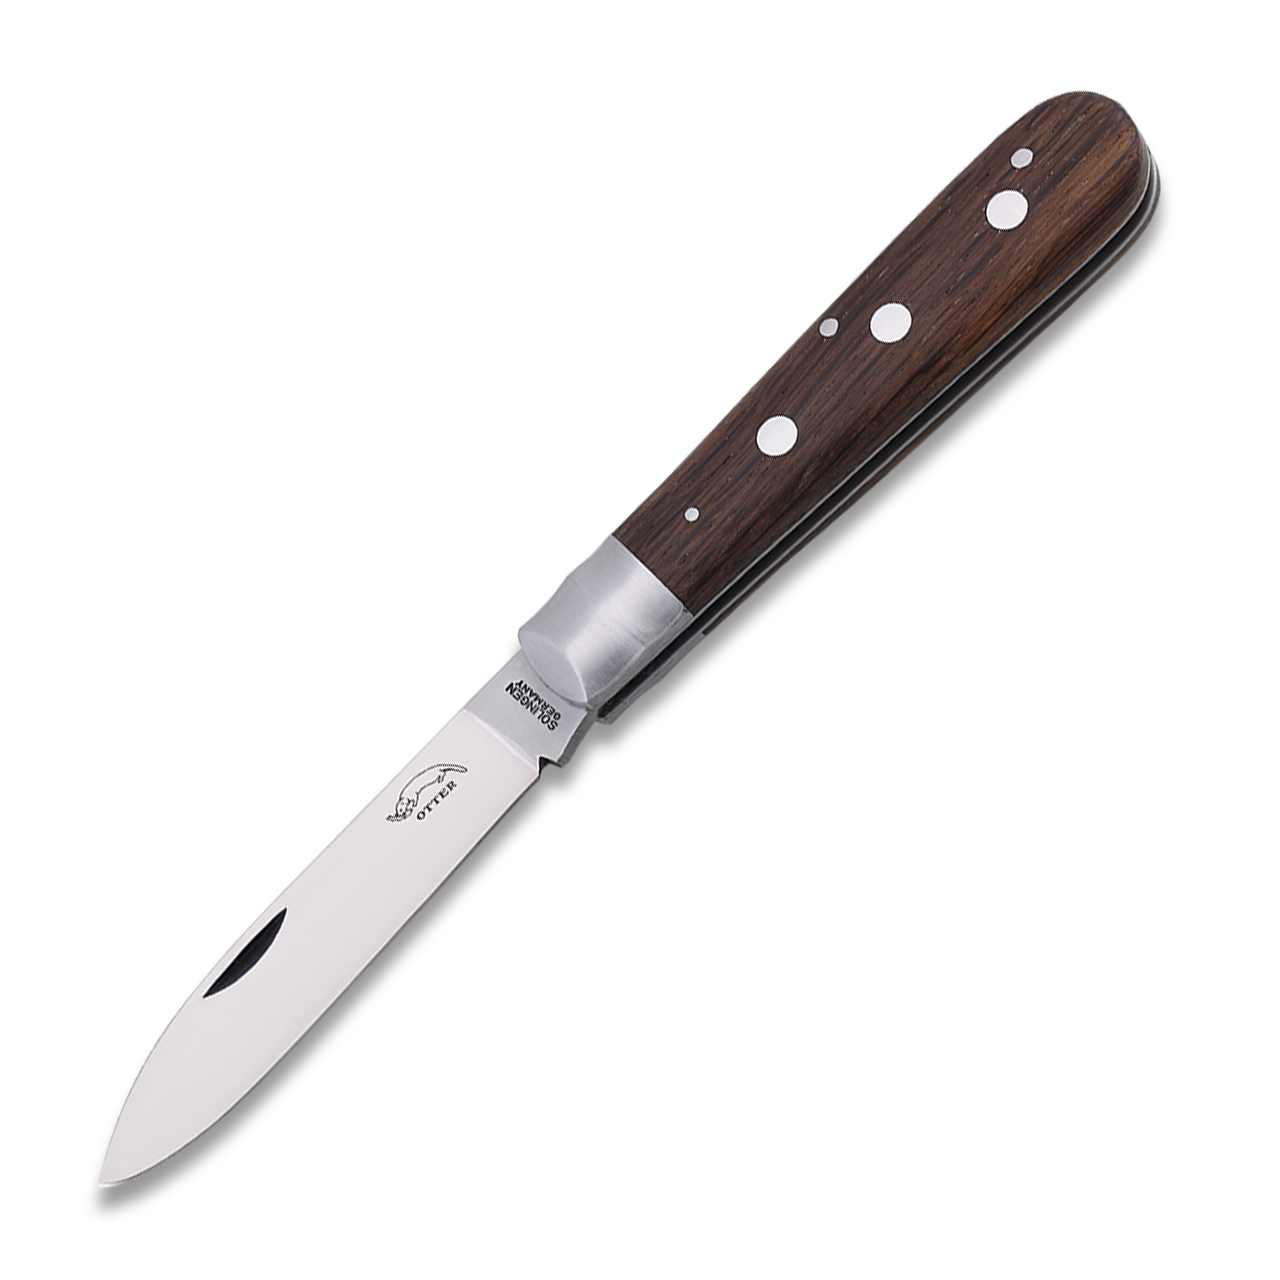 OTTER Pocket knife 3-Rivets stainless steel